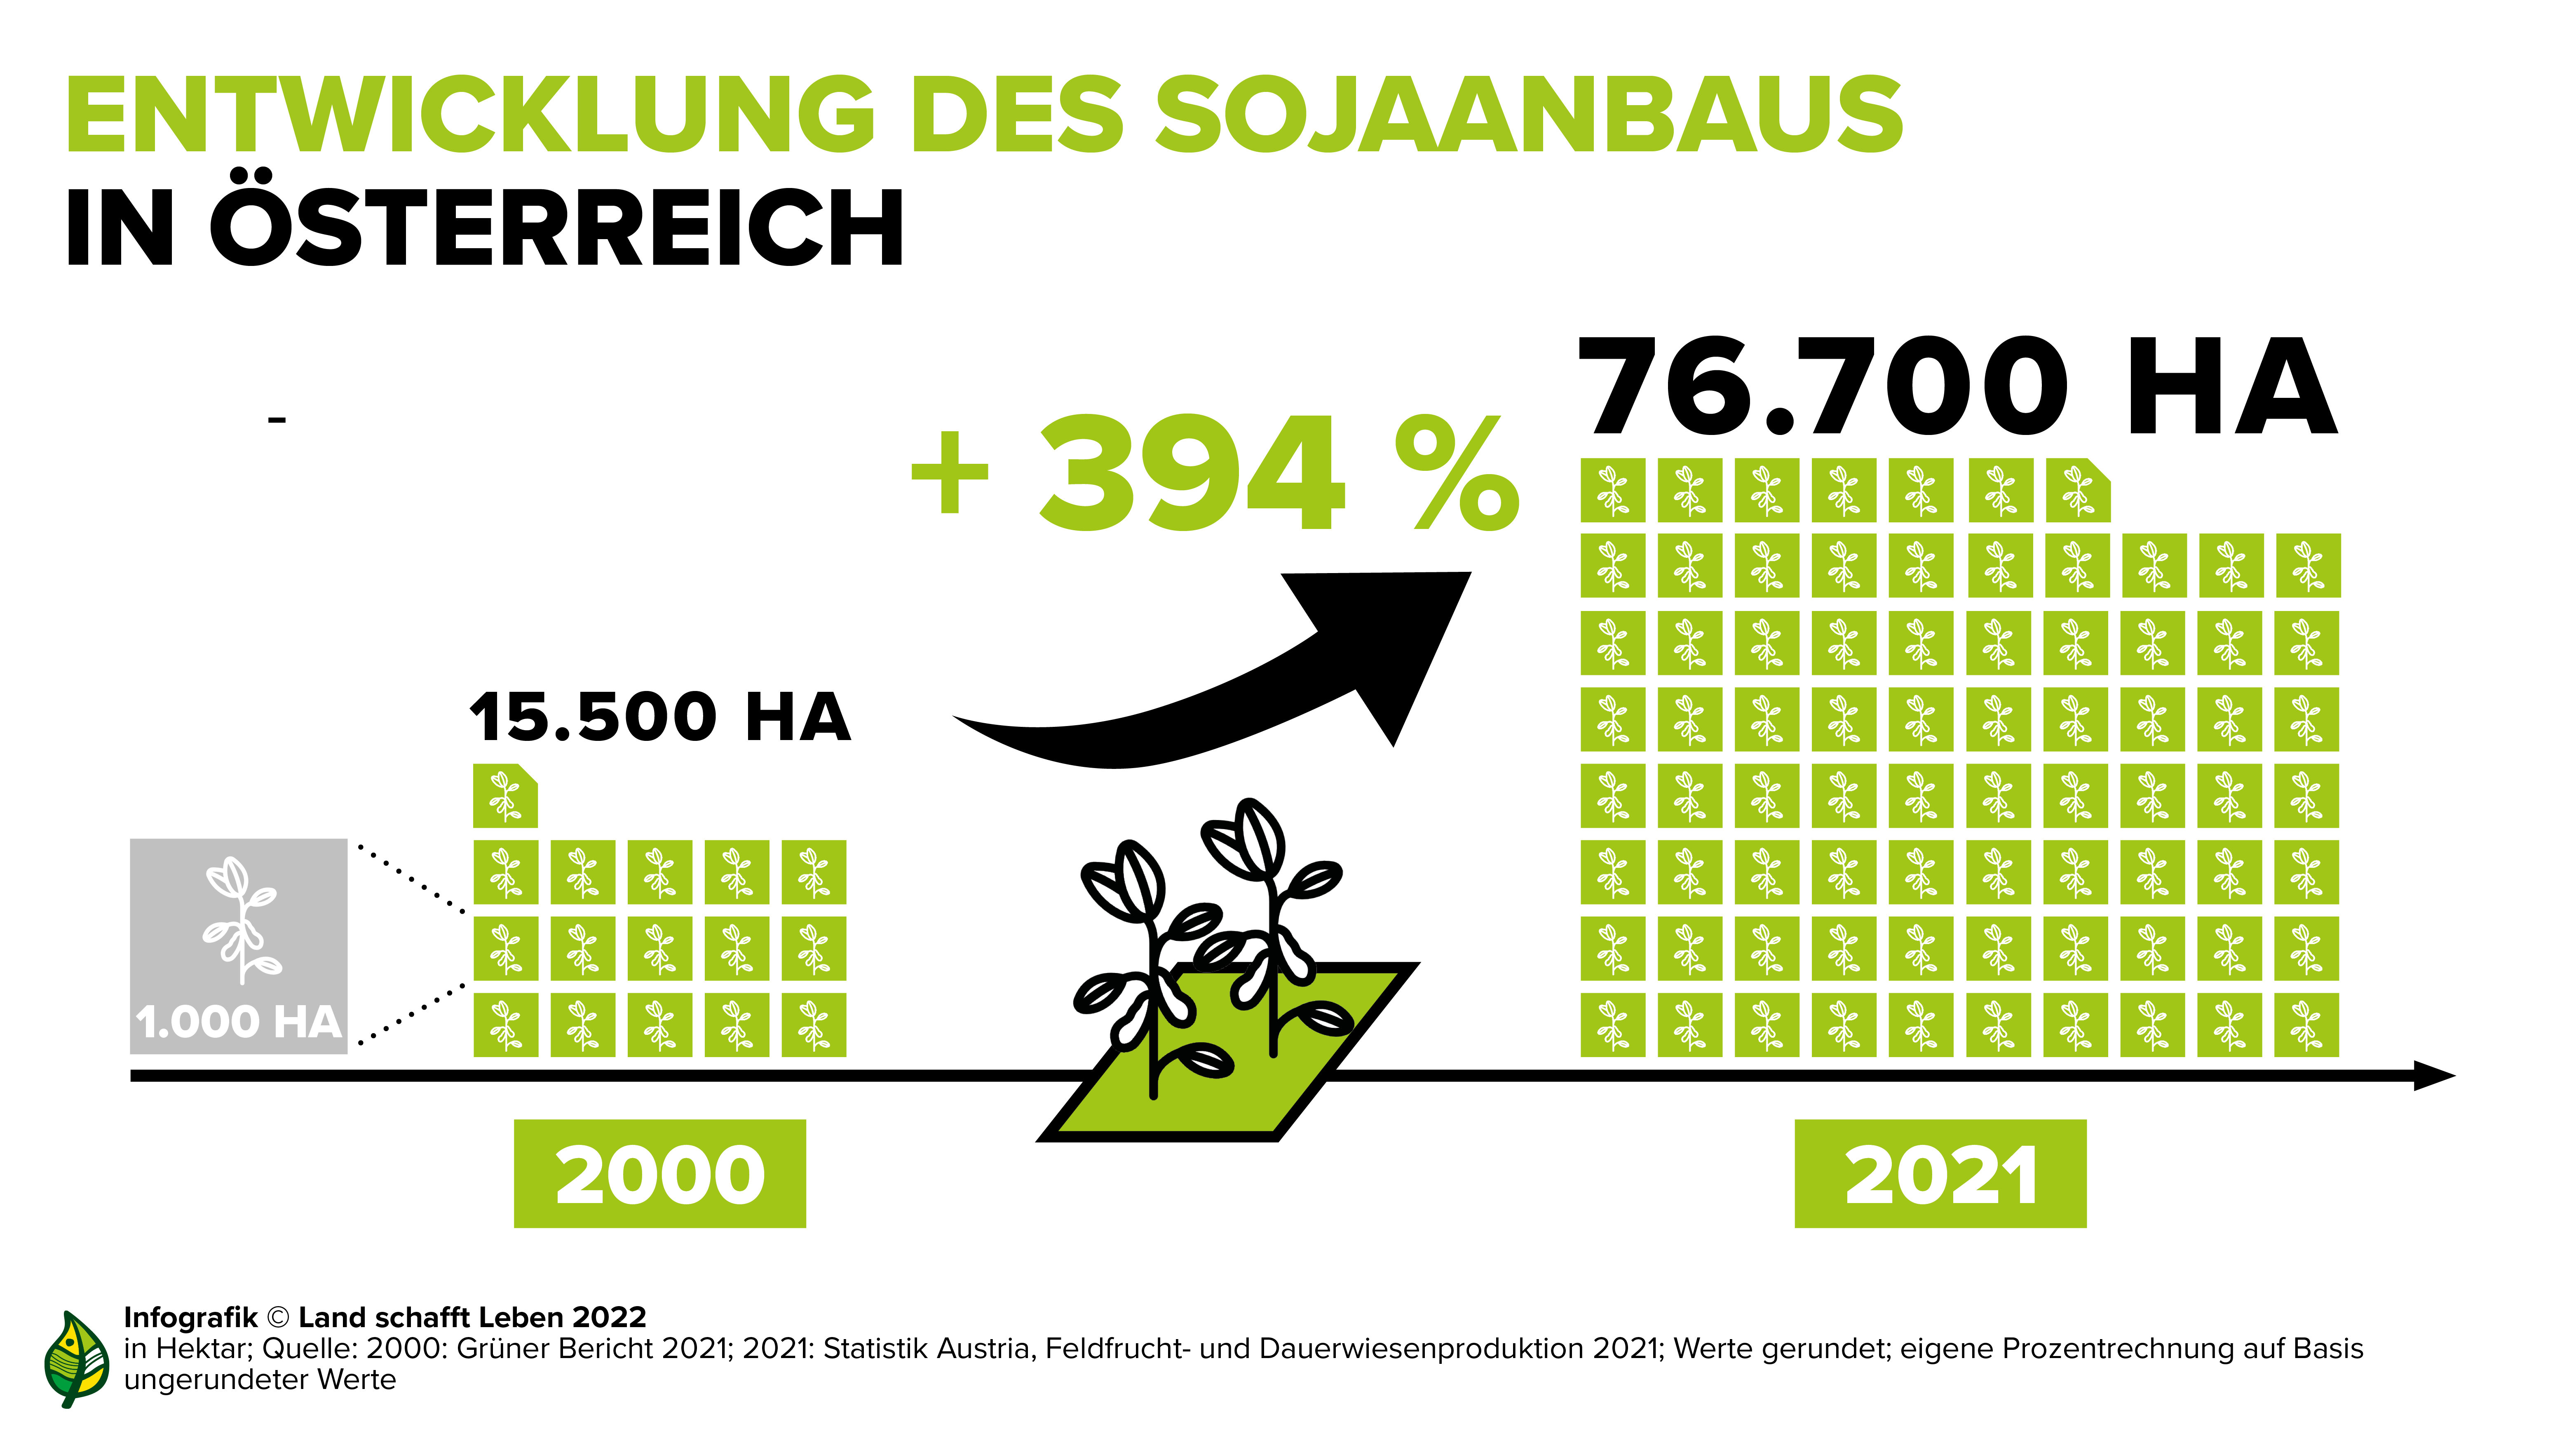 Entwicklung des Sojaanbaus in Österreich - mehr auf www.landschafftleben.at